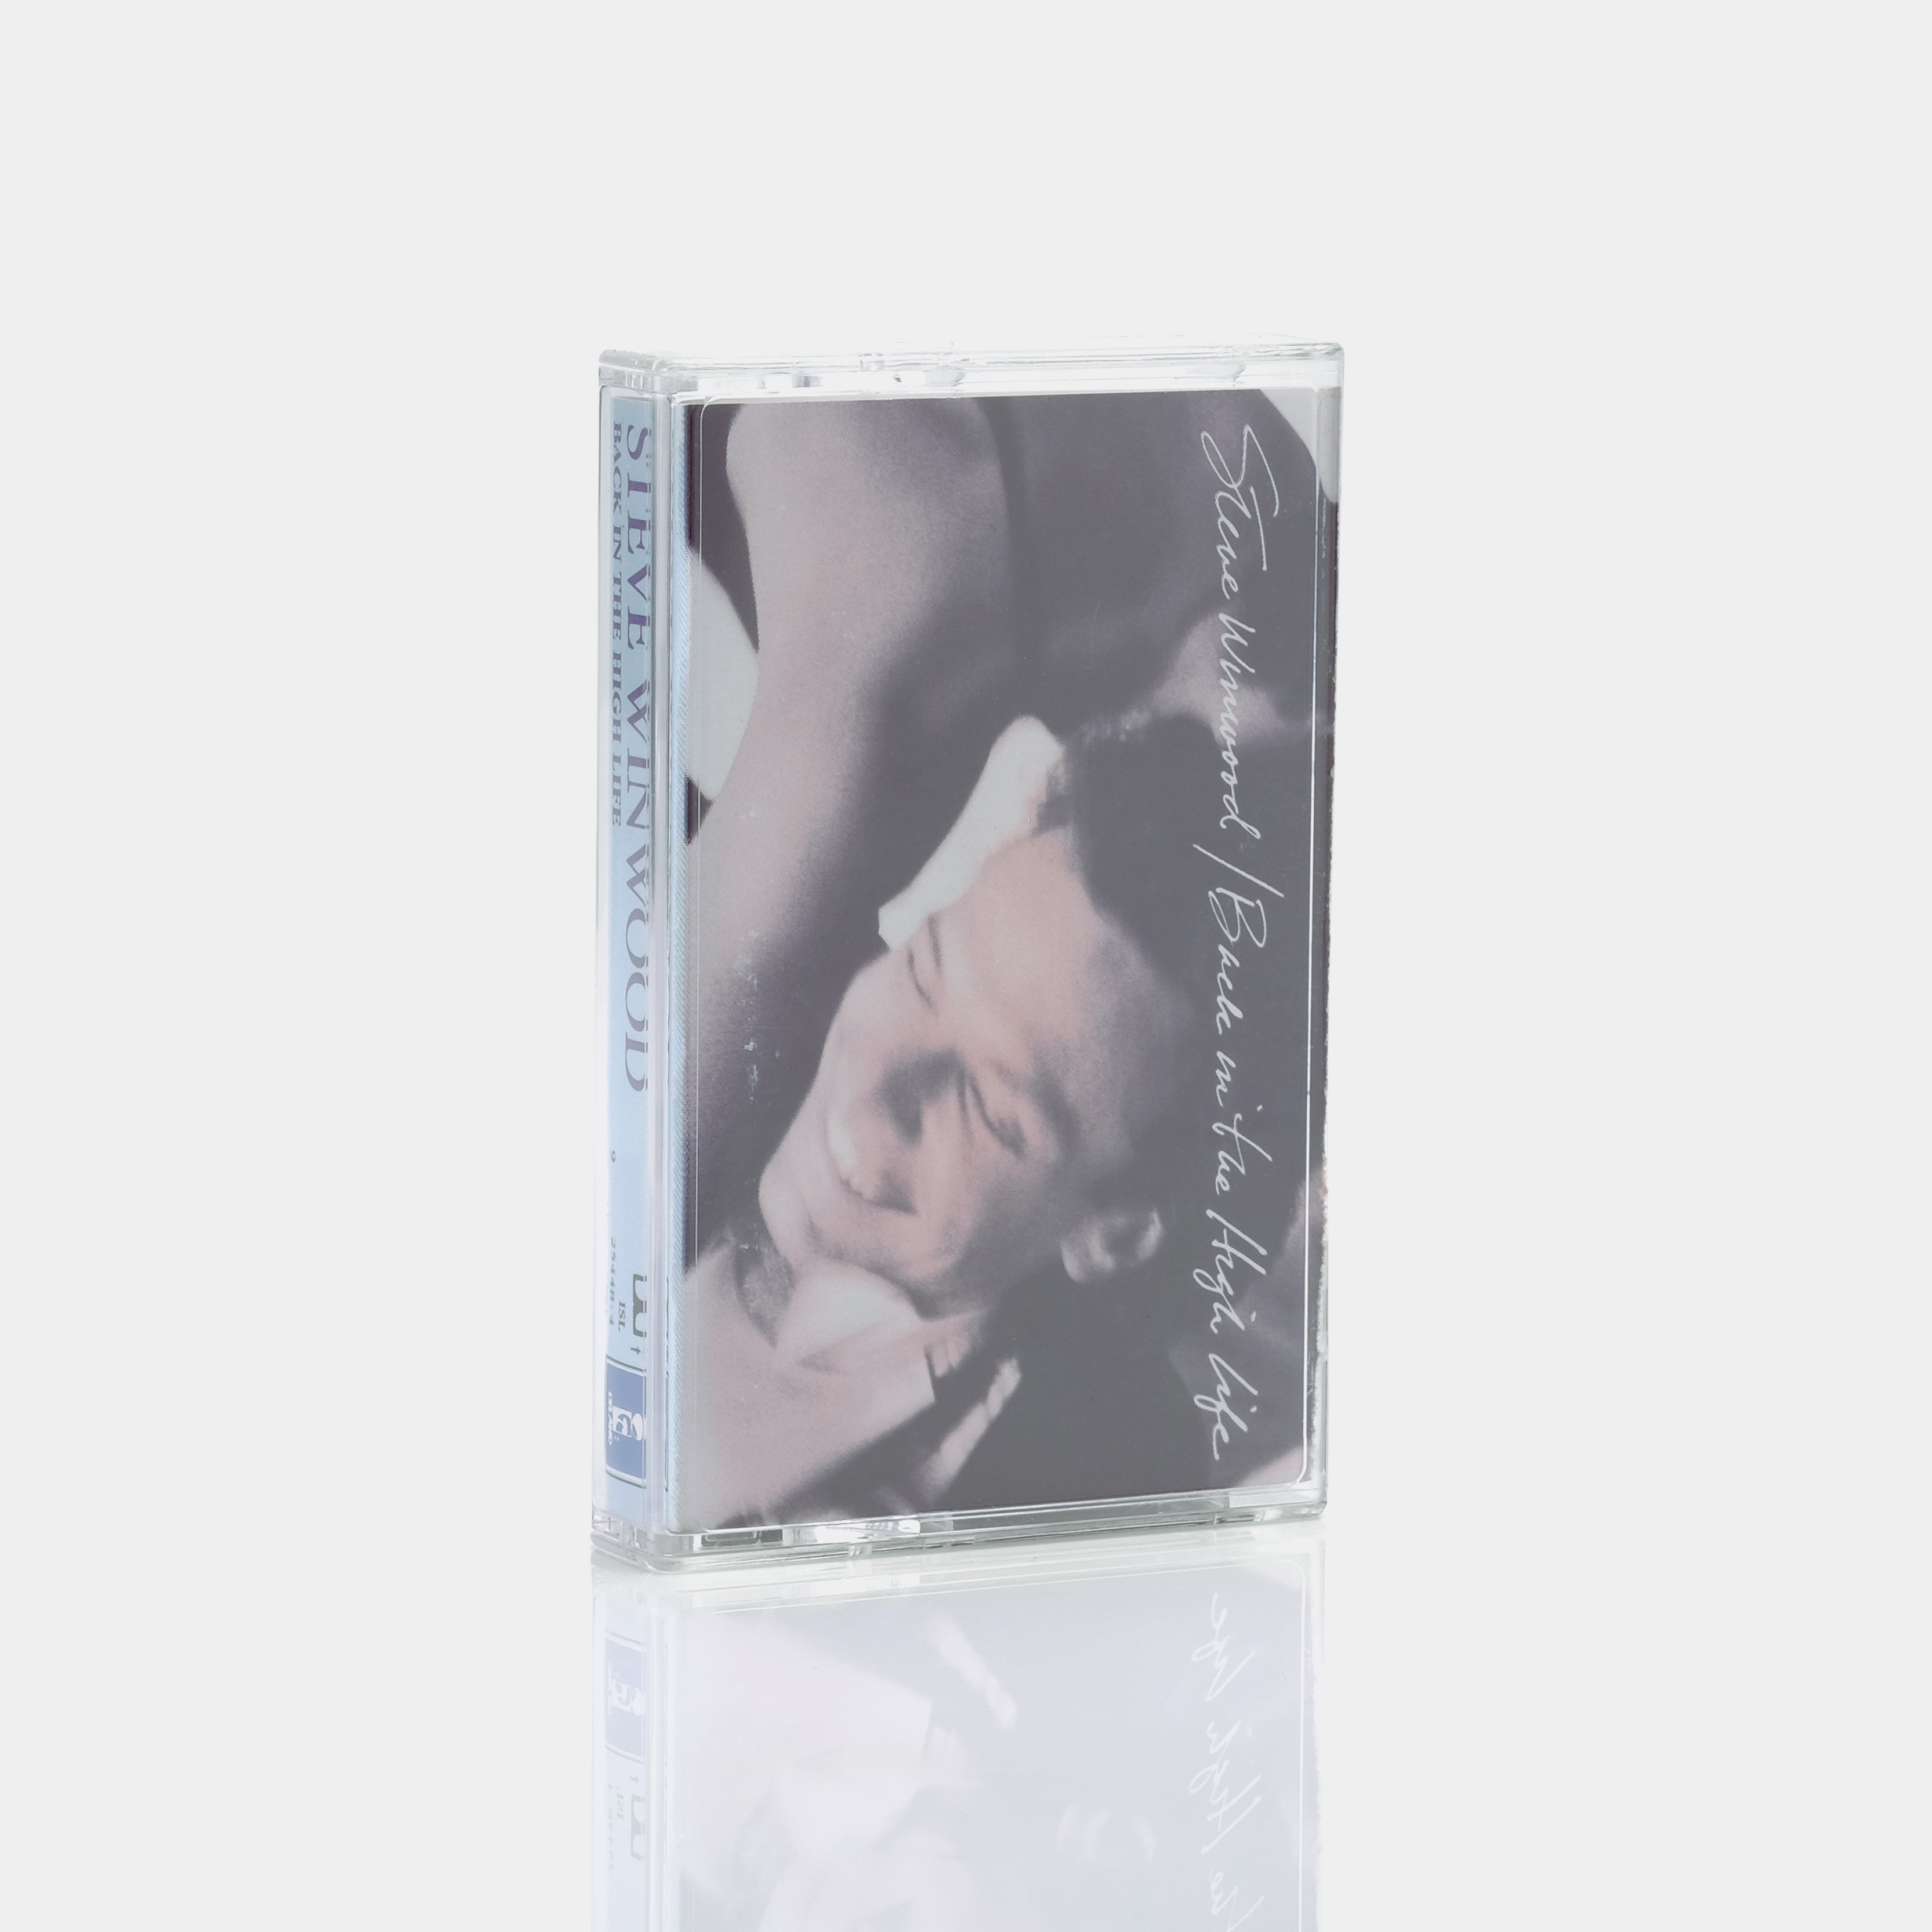 Steve Winwood - Back In The High Life Cassette Tape